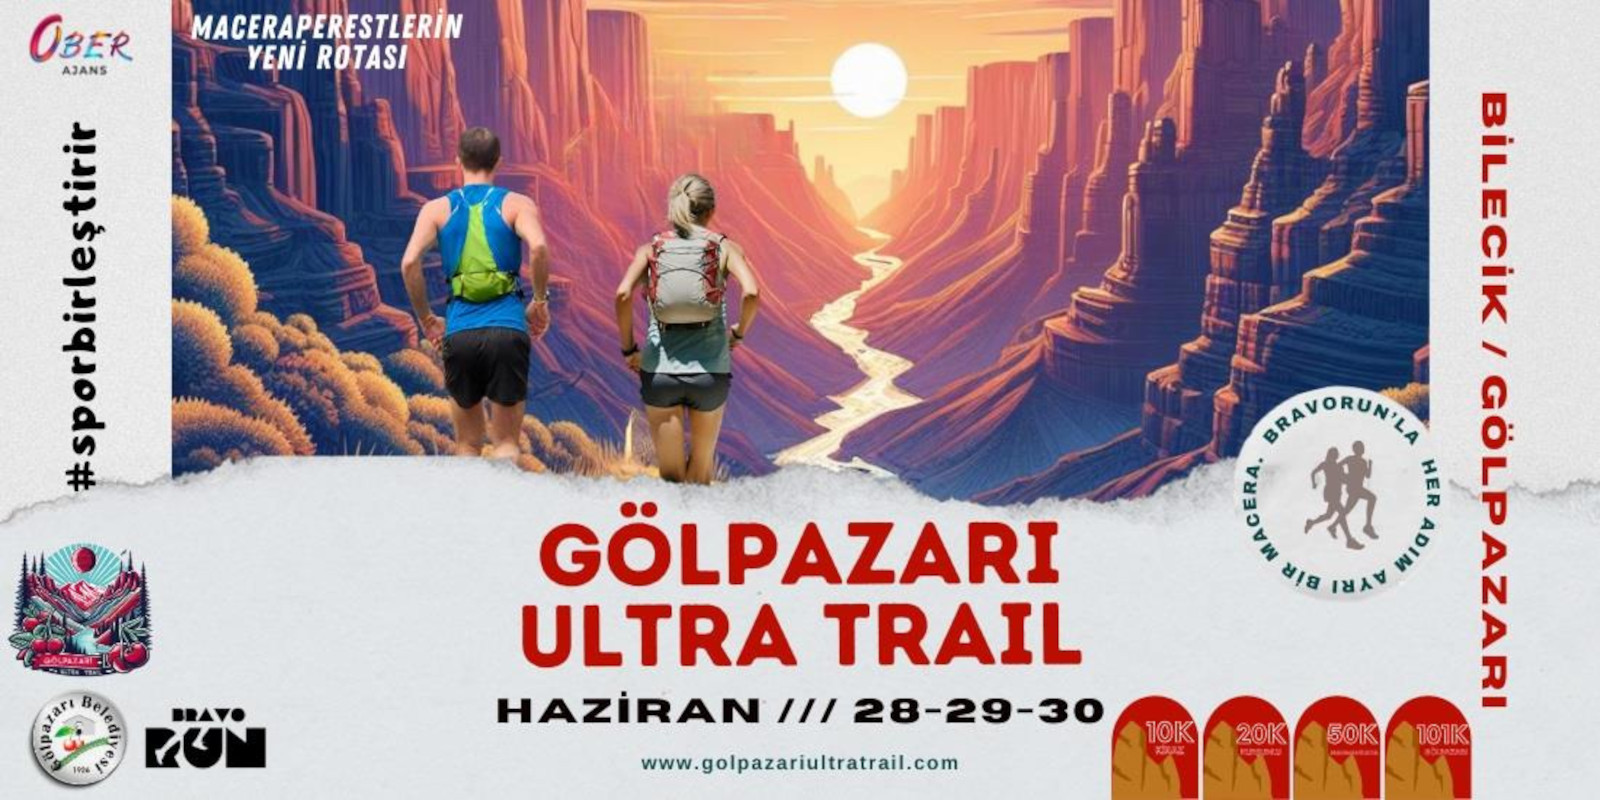 Gilpazarı Ultra Trail